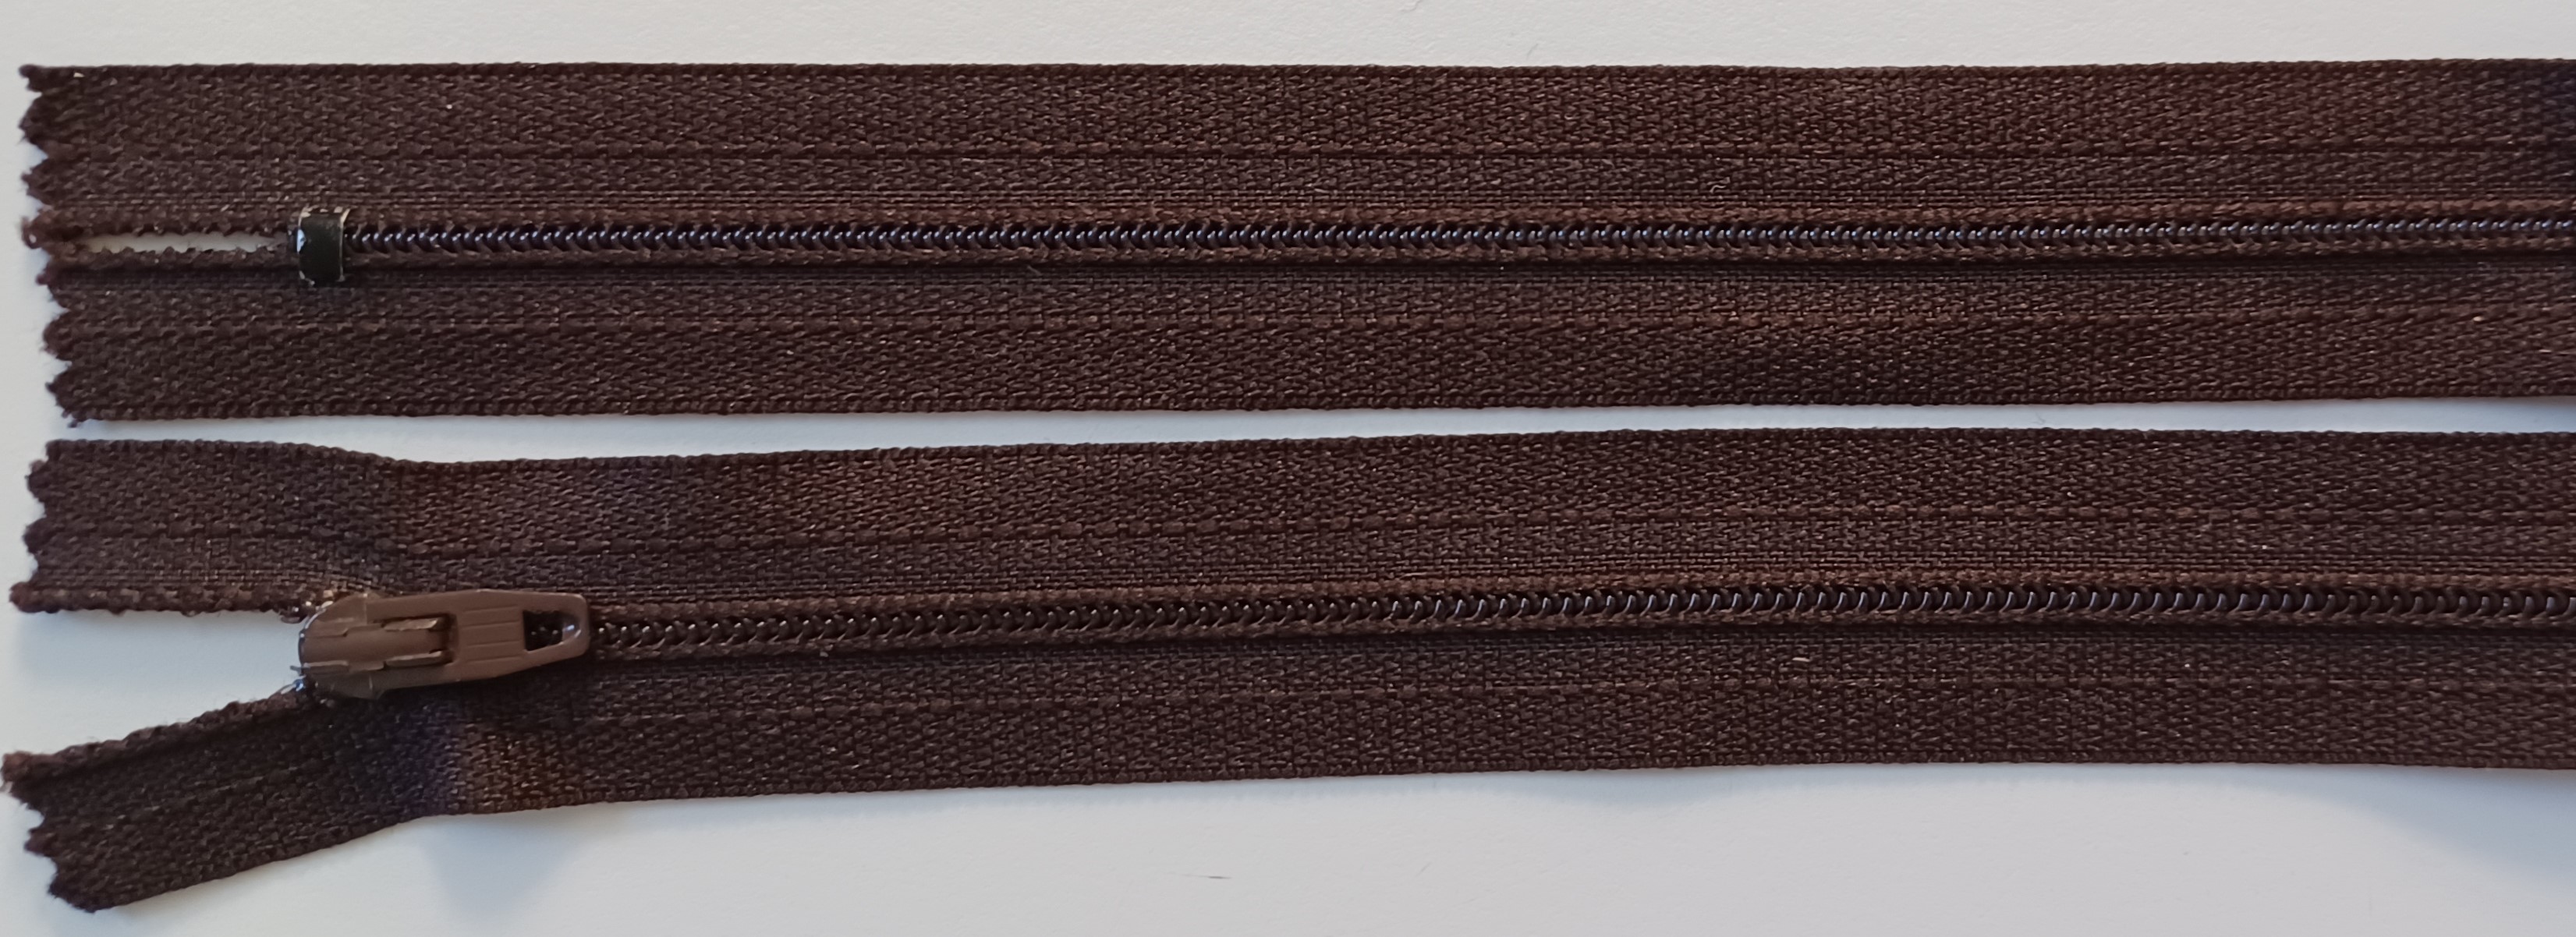 YKK 7" Dark Brown Nylon Coil Zipper